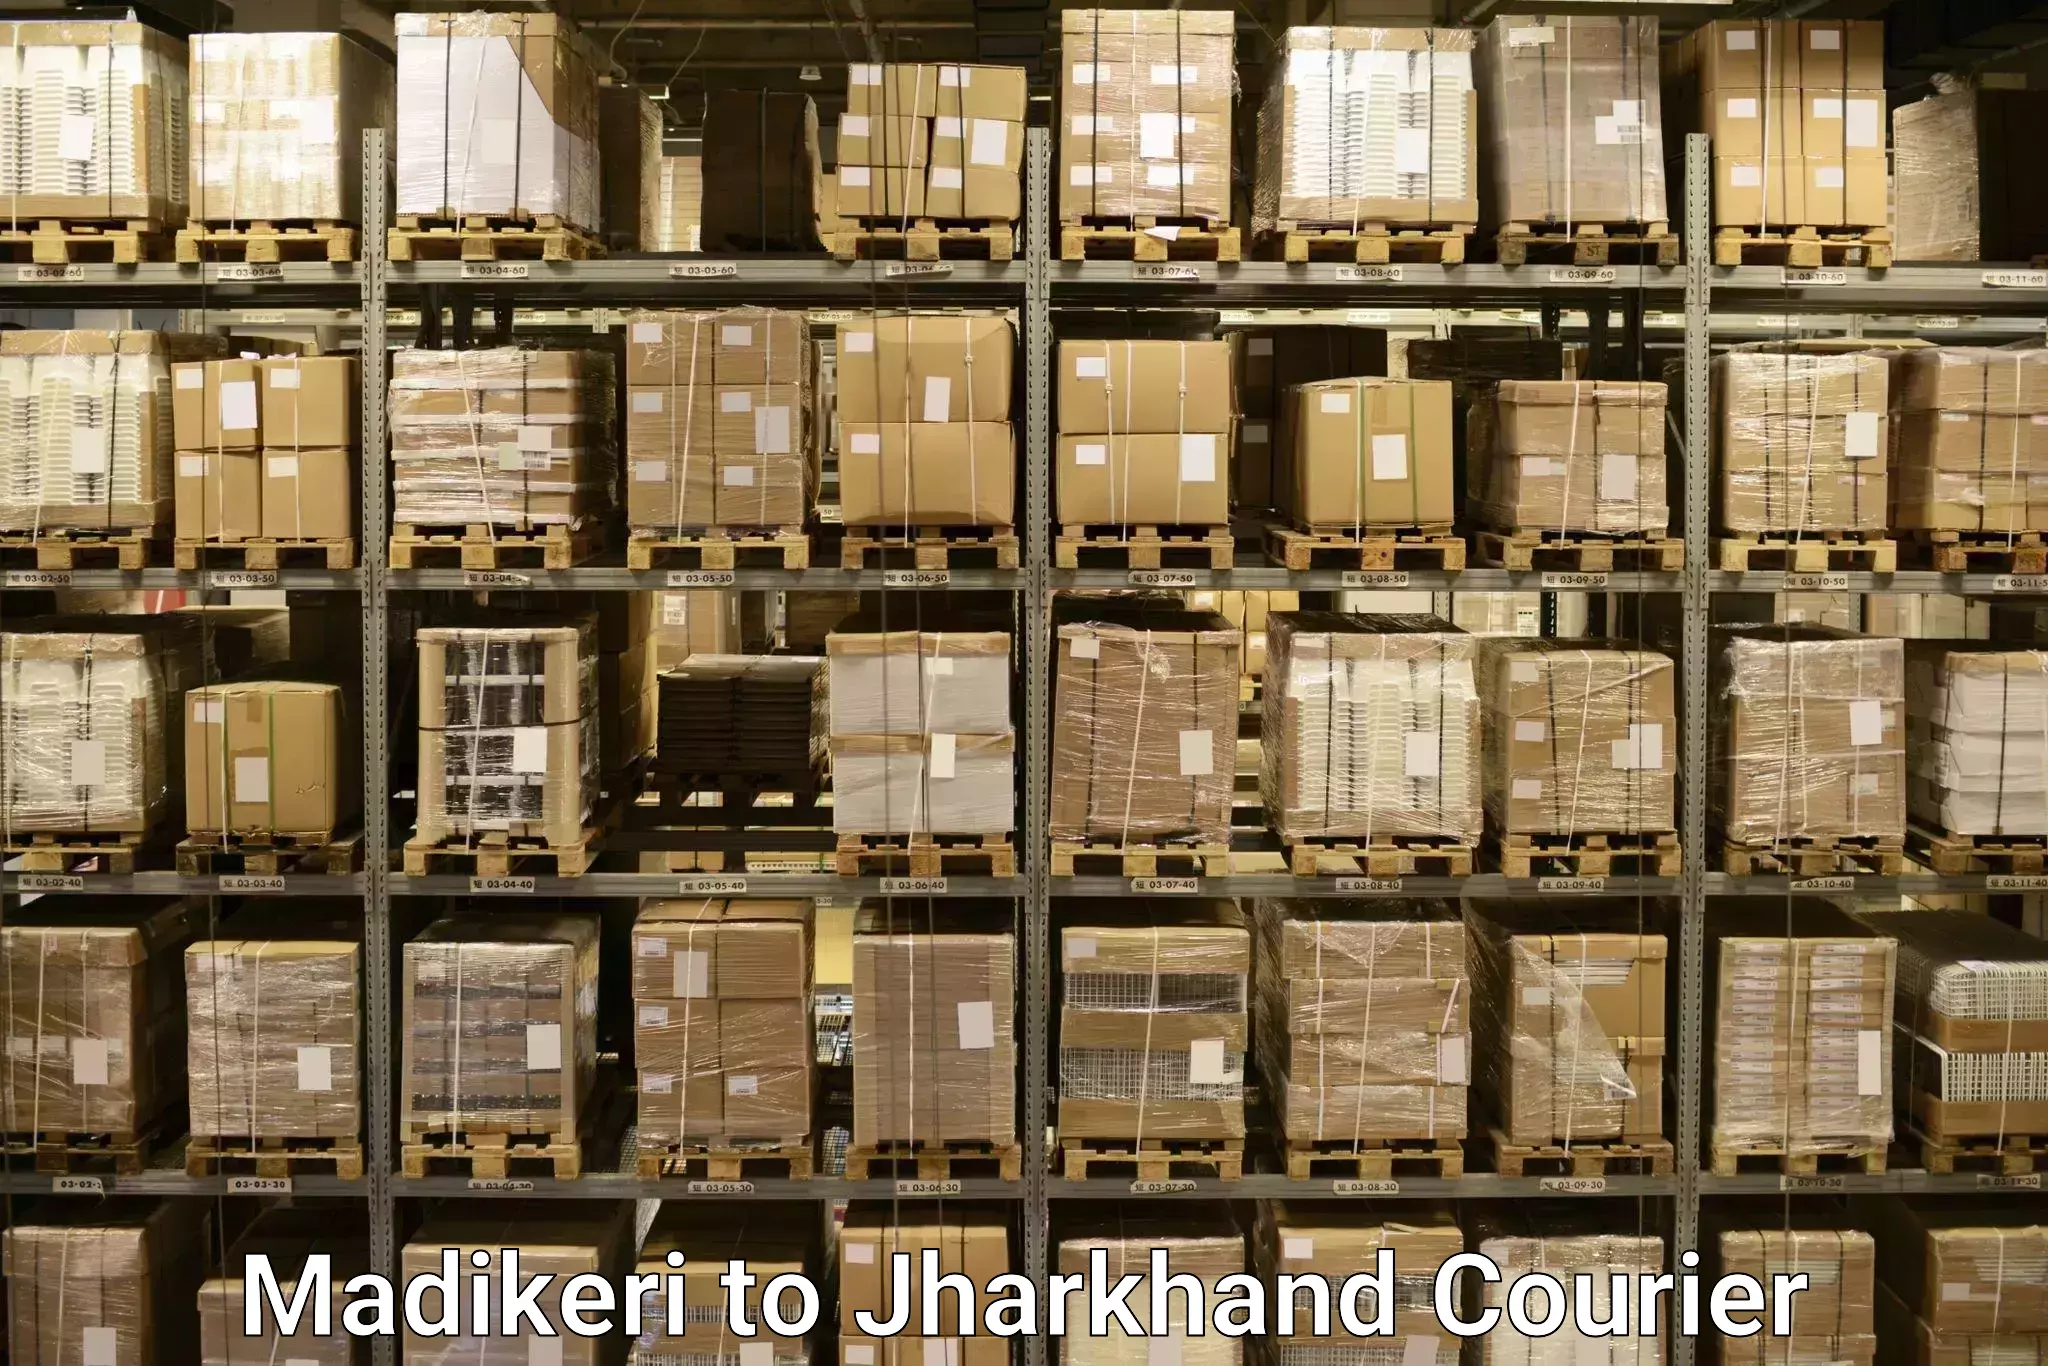 Baggage shipping quotes Madikeri to Jamshedpur